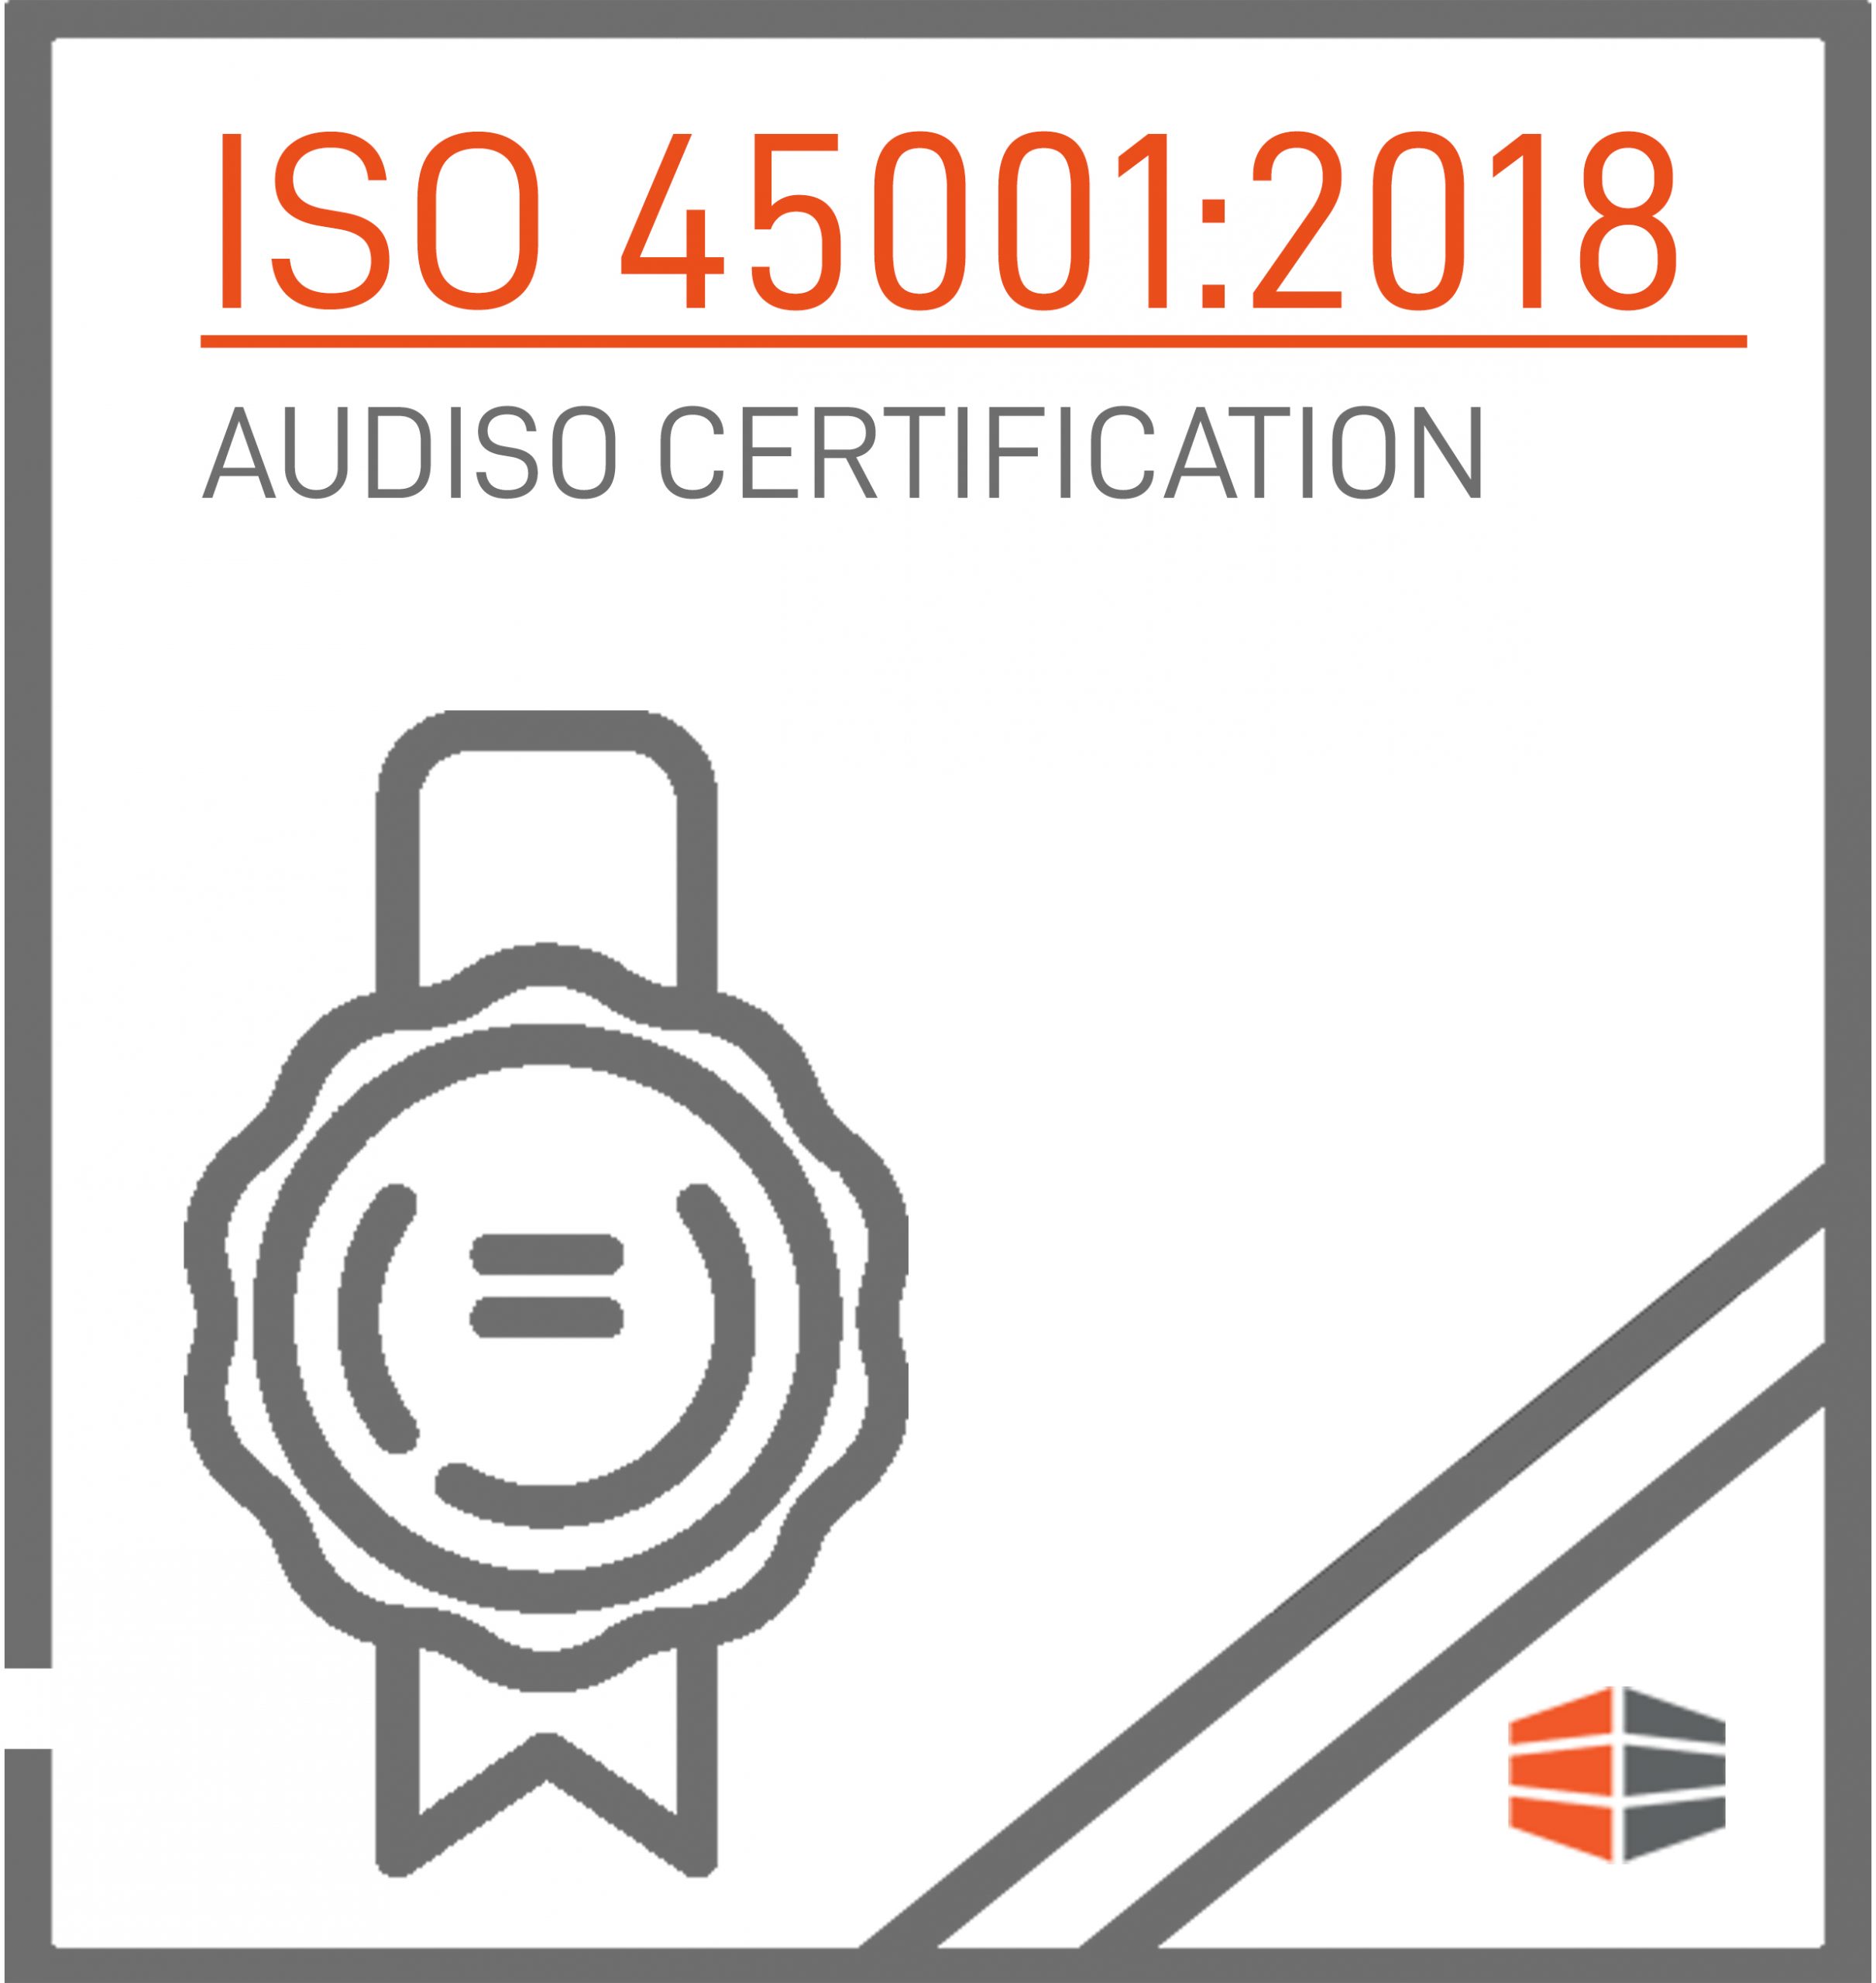 Certificazione  ISO 45001:2018 Rilasciata da AUDISO CERTIFICATION